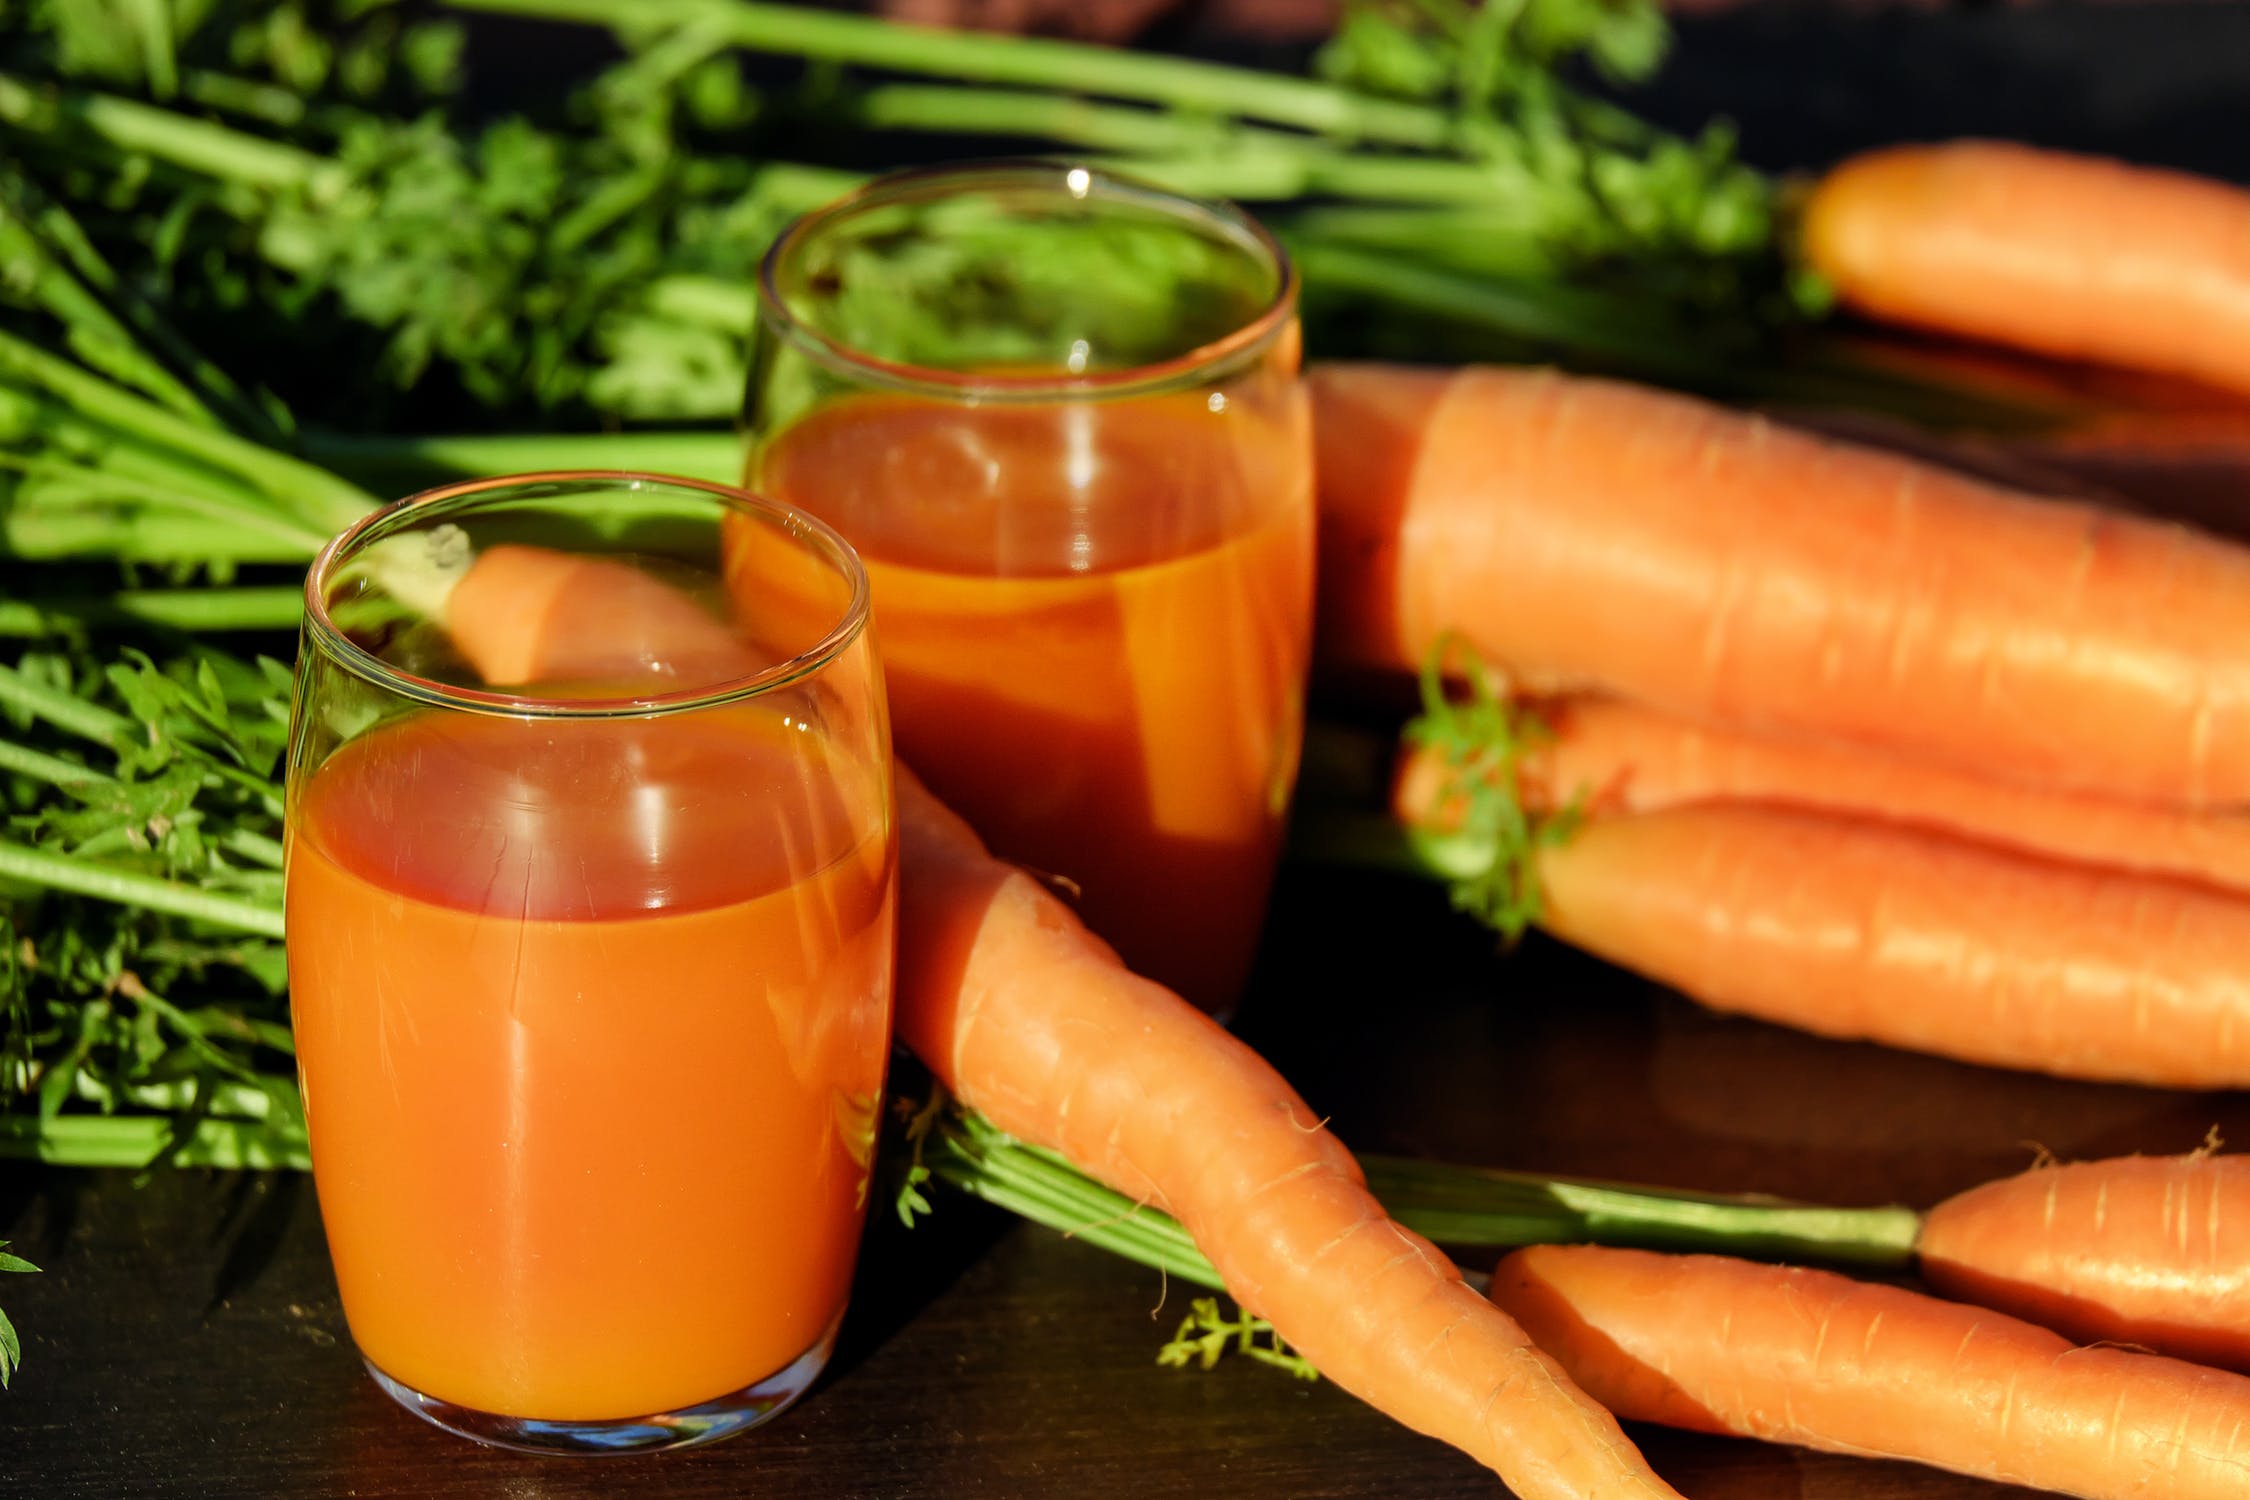 Dieta cu suc de morcovi: slăbeşti sănătos şi îţi detoxifici organismul! Cum funcţionează